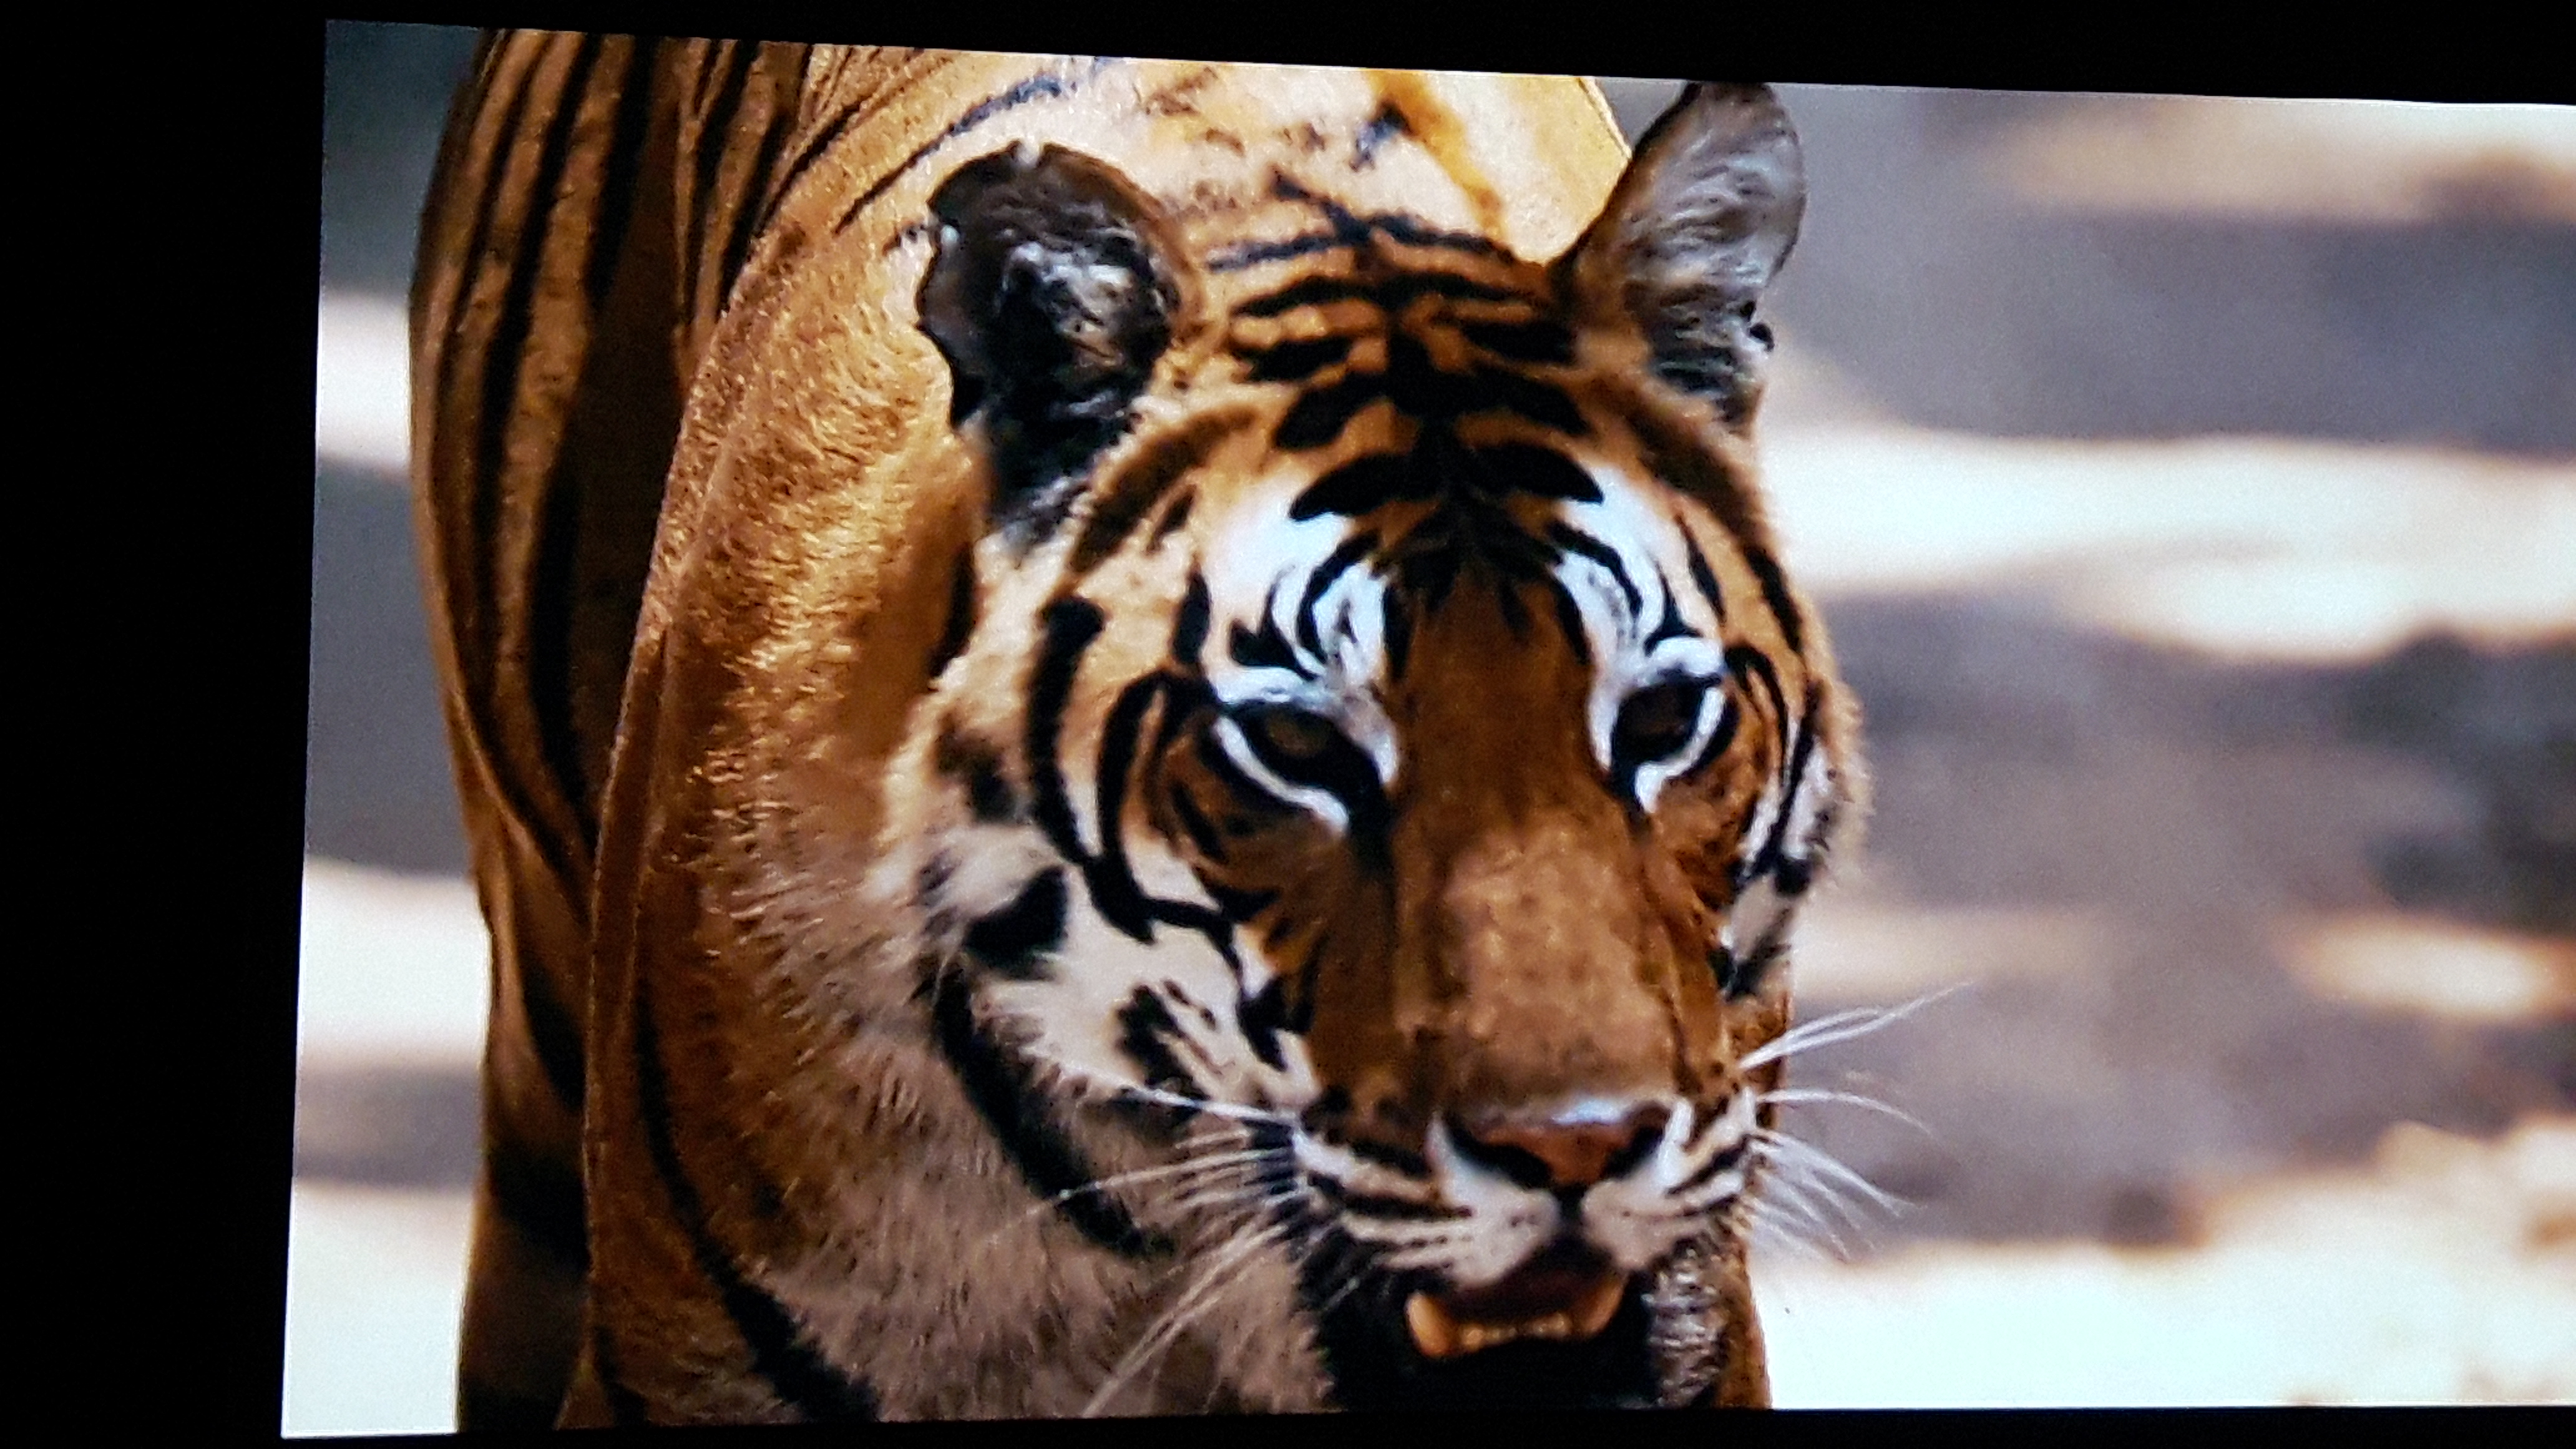 الفيلم يرصد تعرض النمور الى الانقراض